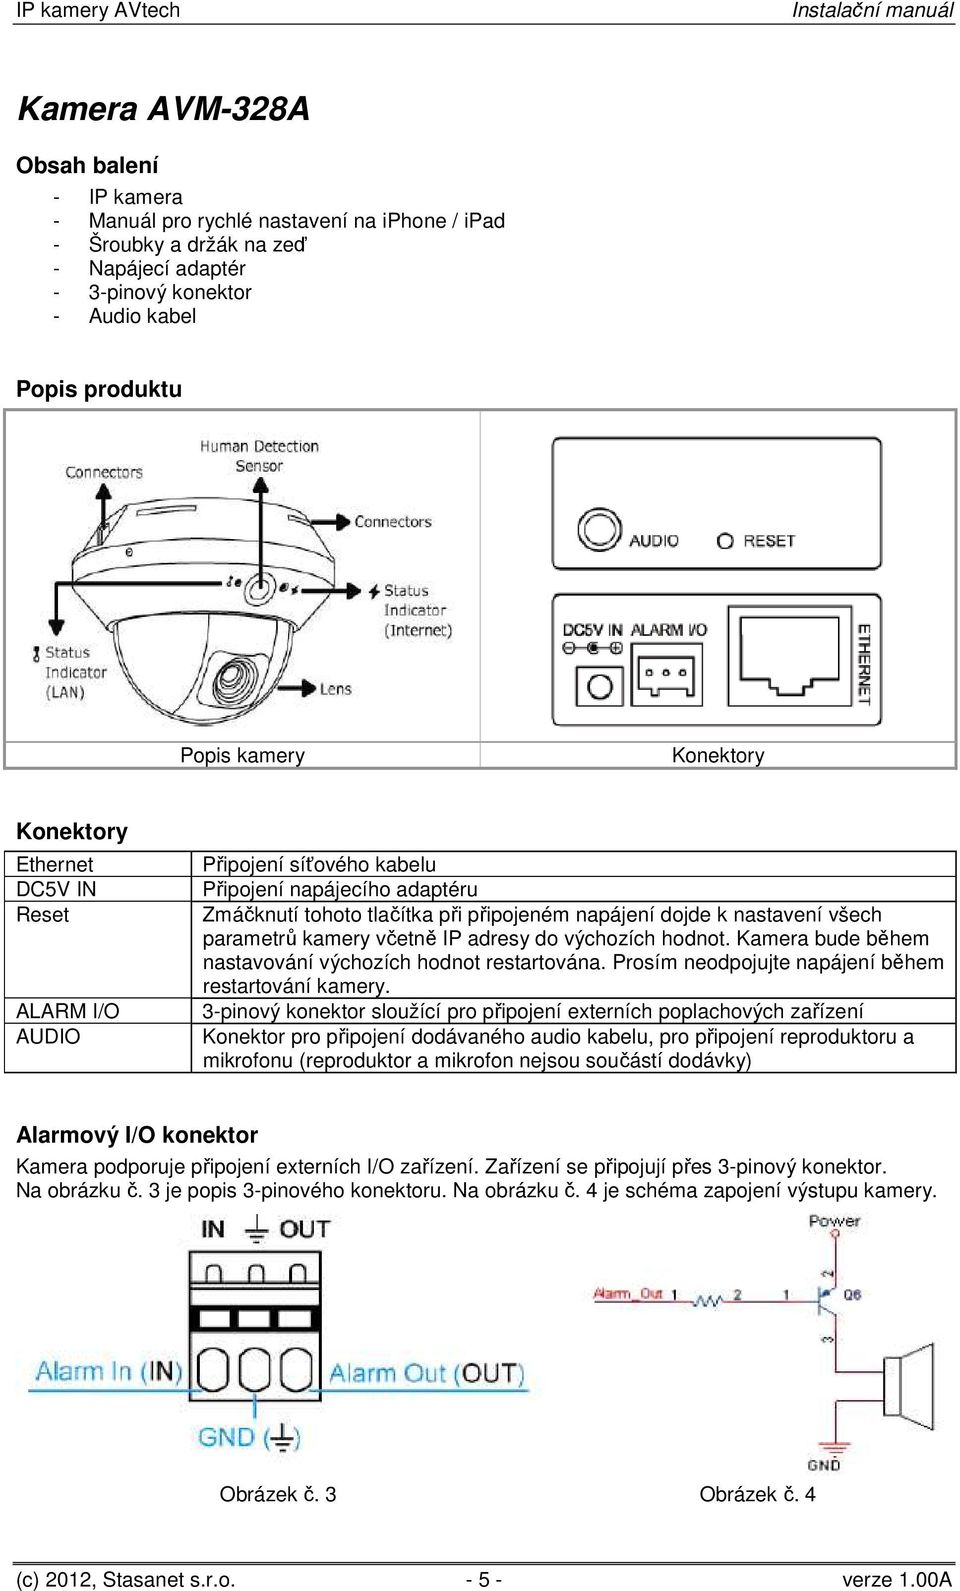 IP kamery AVtech. Instalační manuál Návod k použití - PDF Stažení zdarma